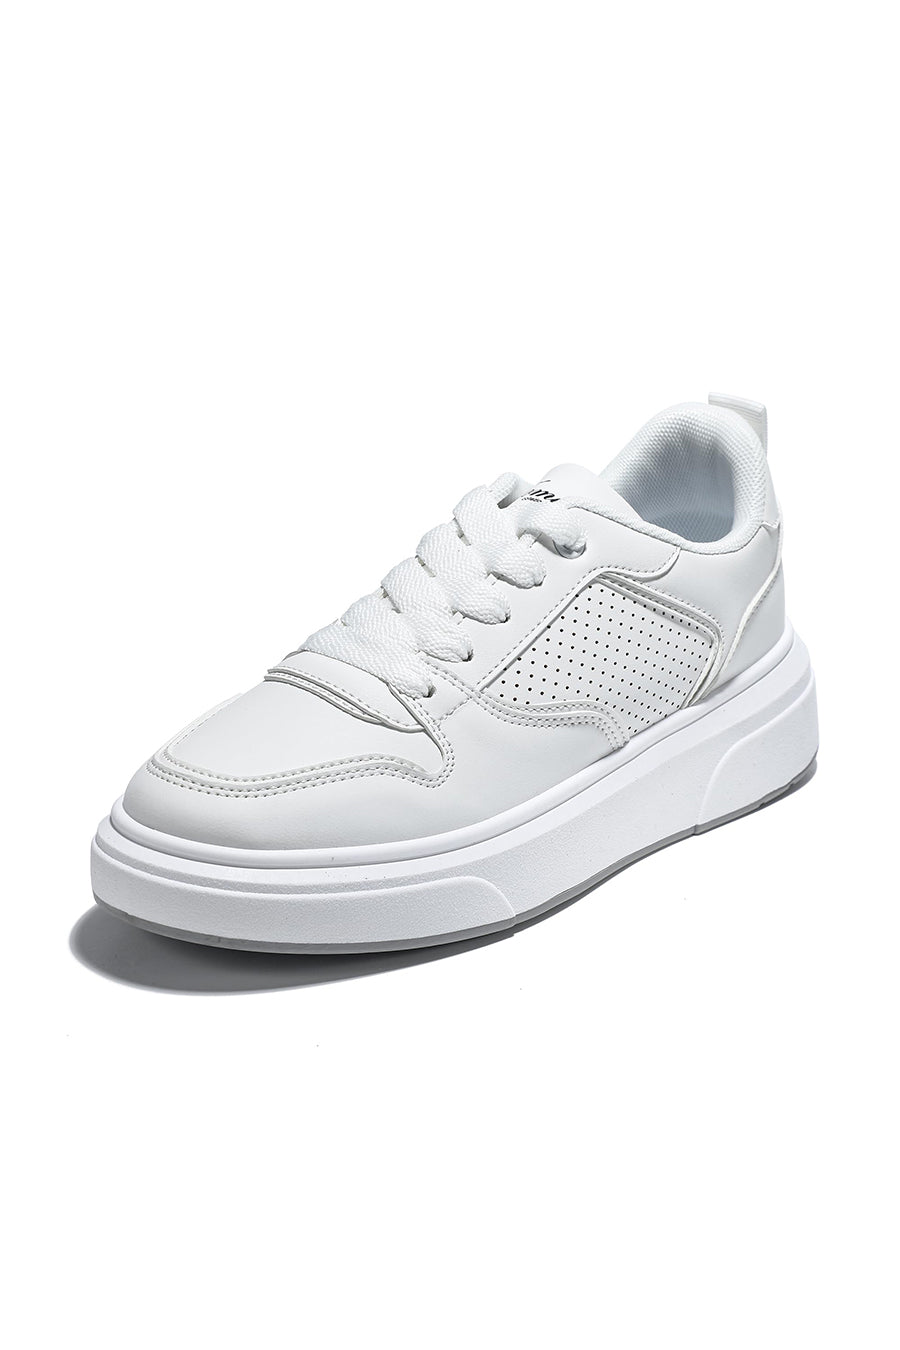 JOMIX Sneakers Donna Casual Scarpe Sportive Comode da Camminata SD9485